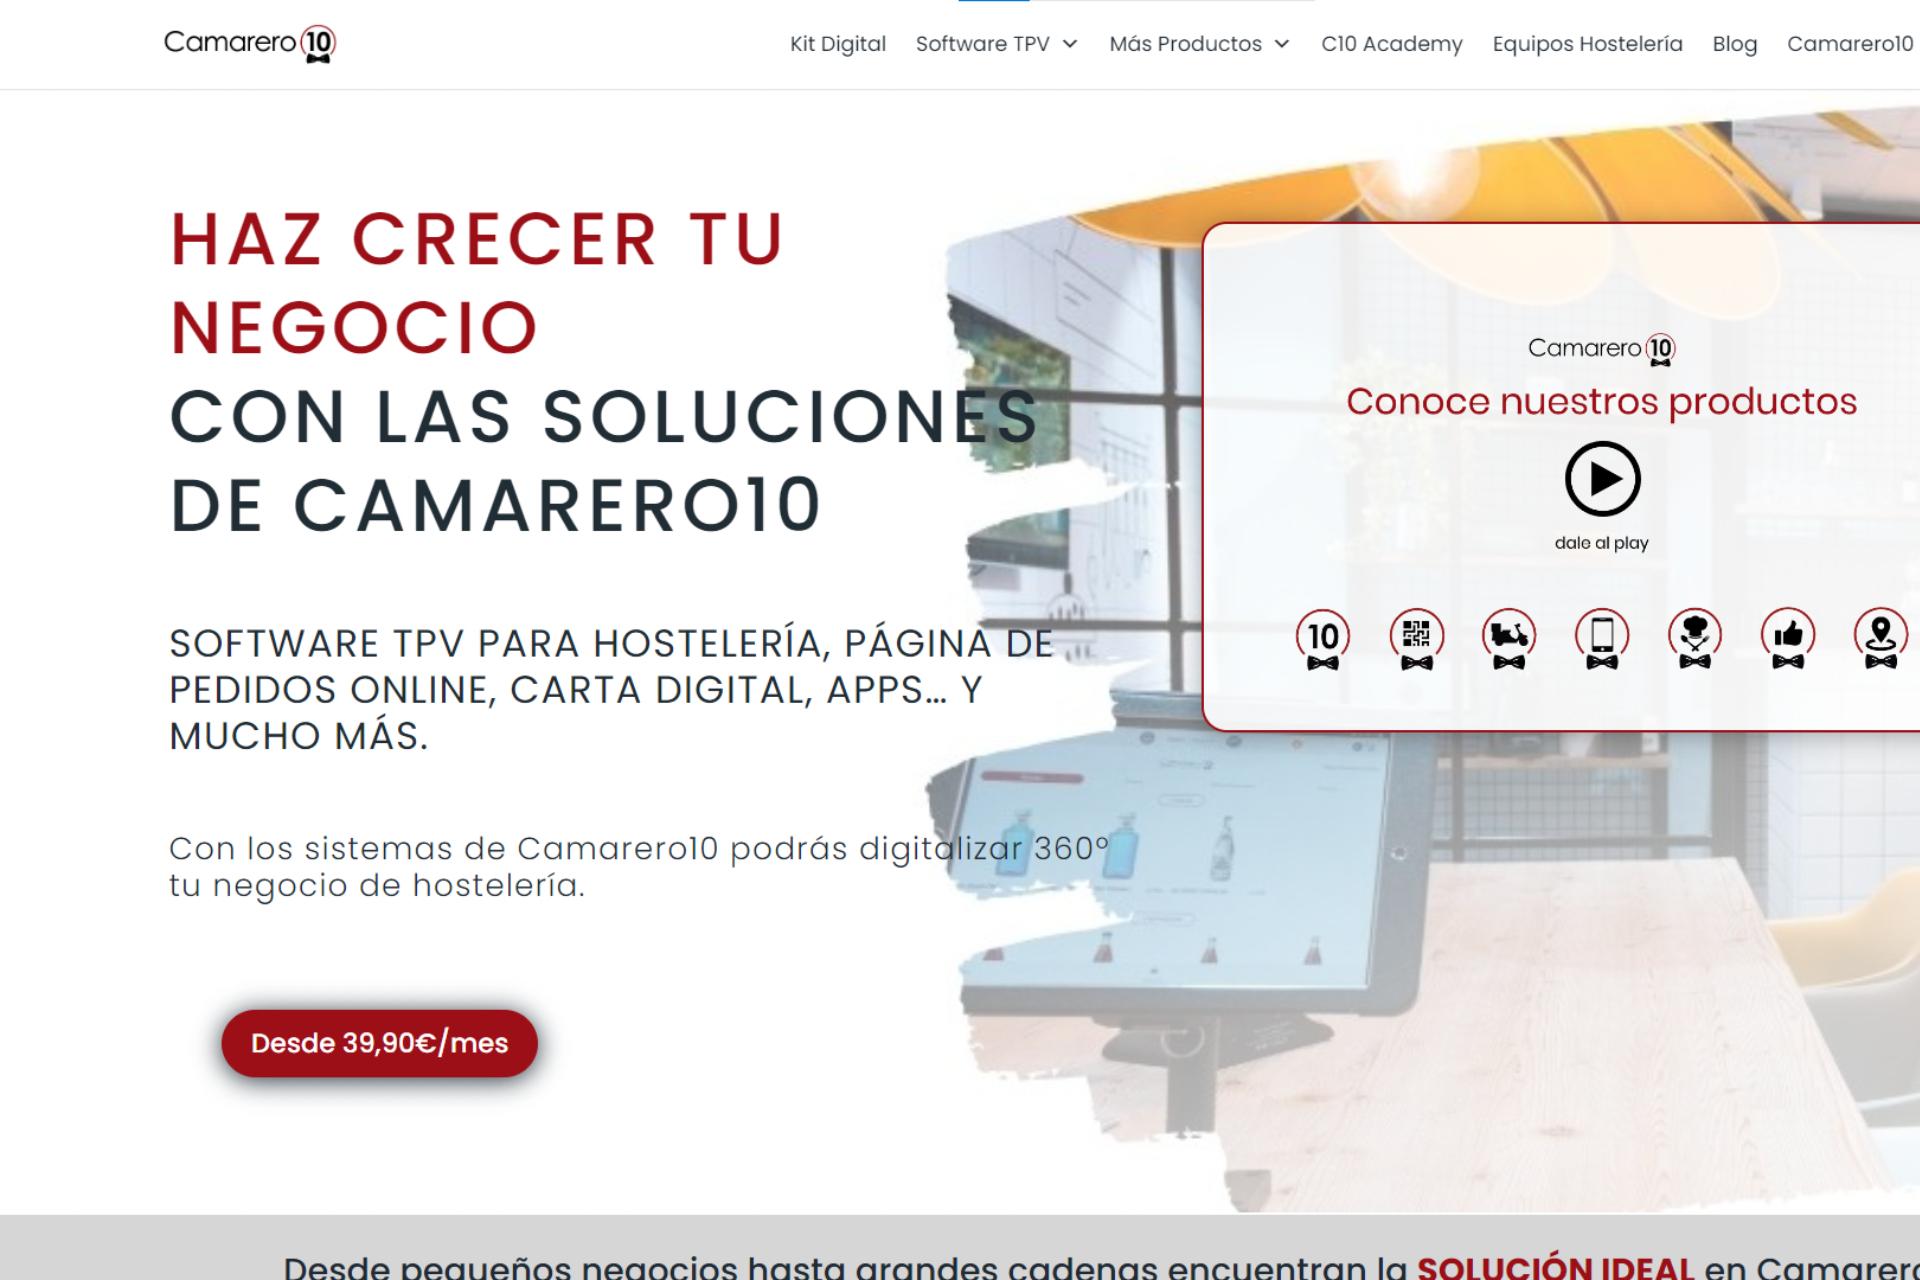 pagina web de camarero10, otro sistema de punto de venta hecho y principalmente usado en España